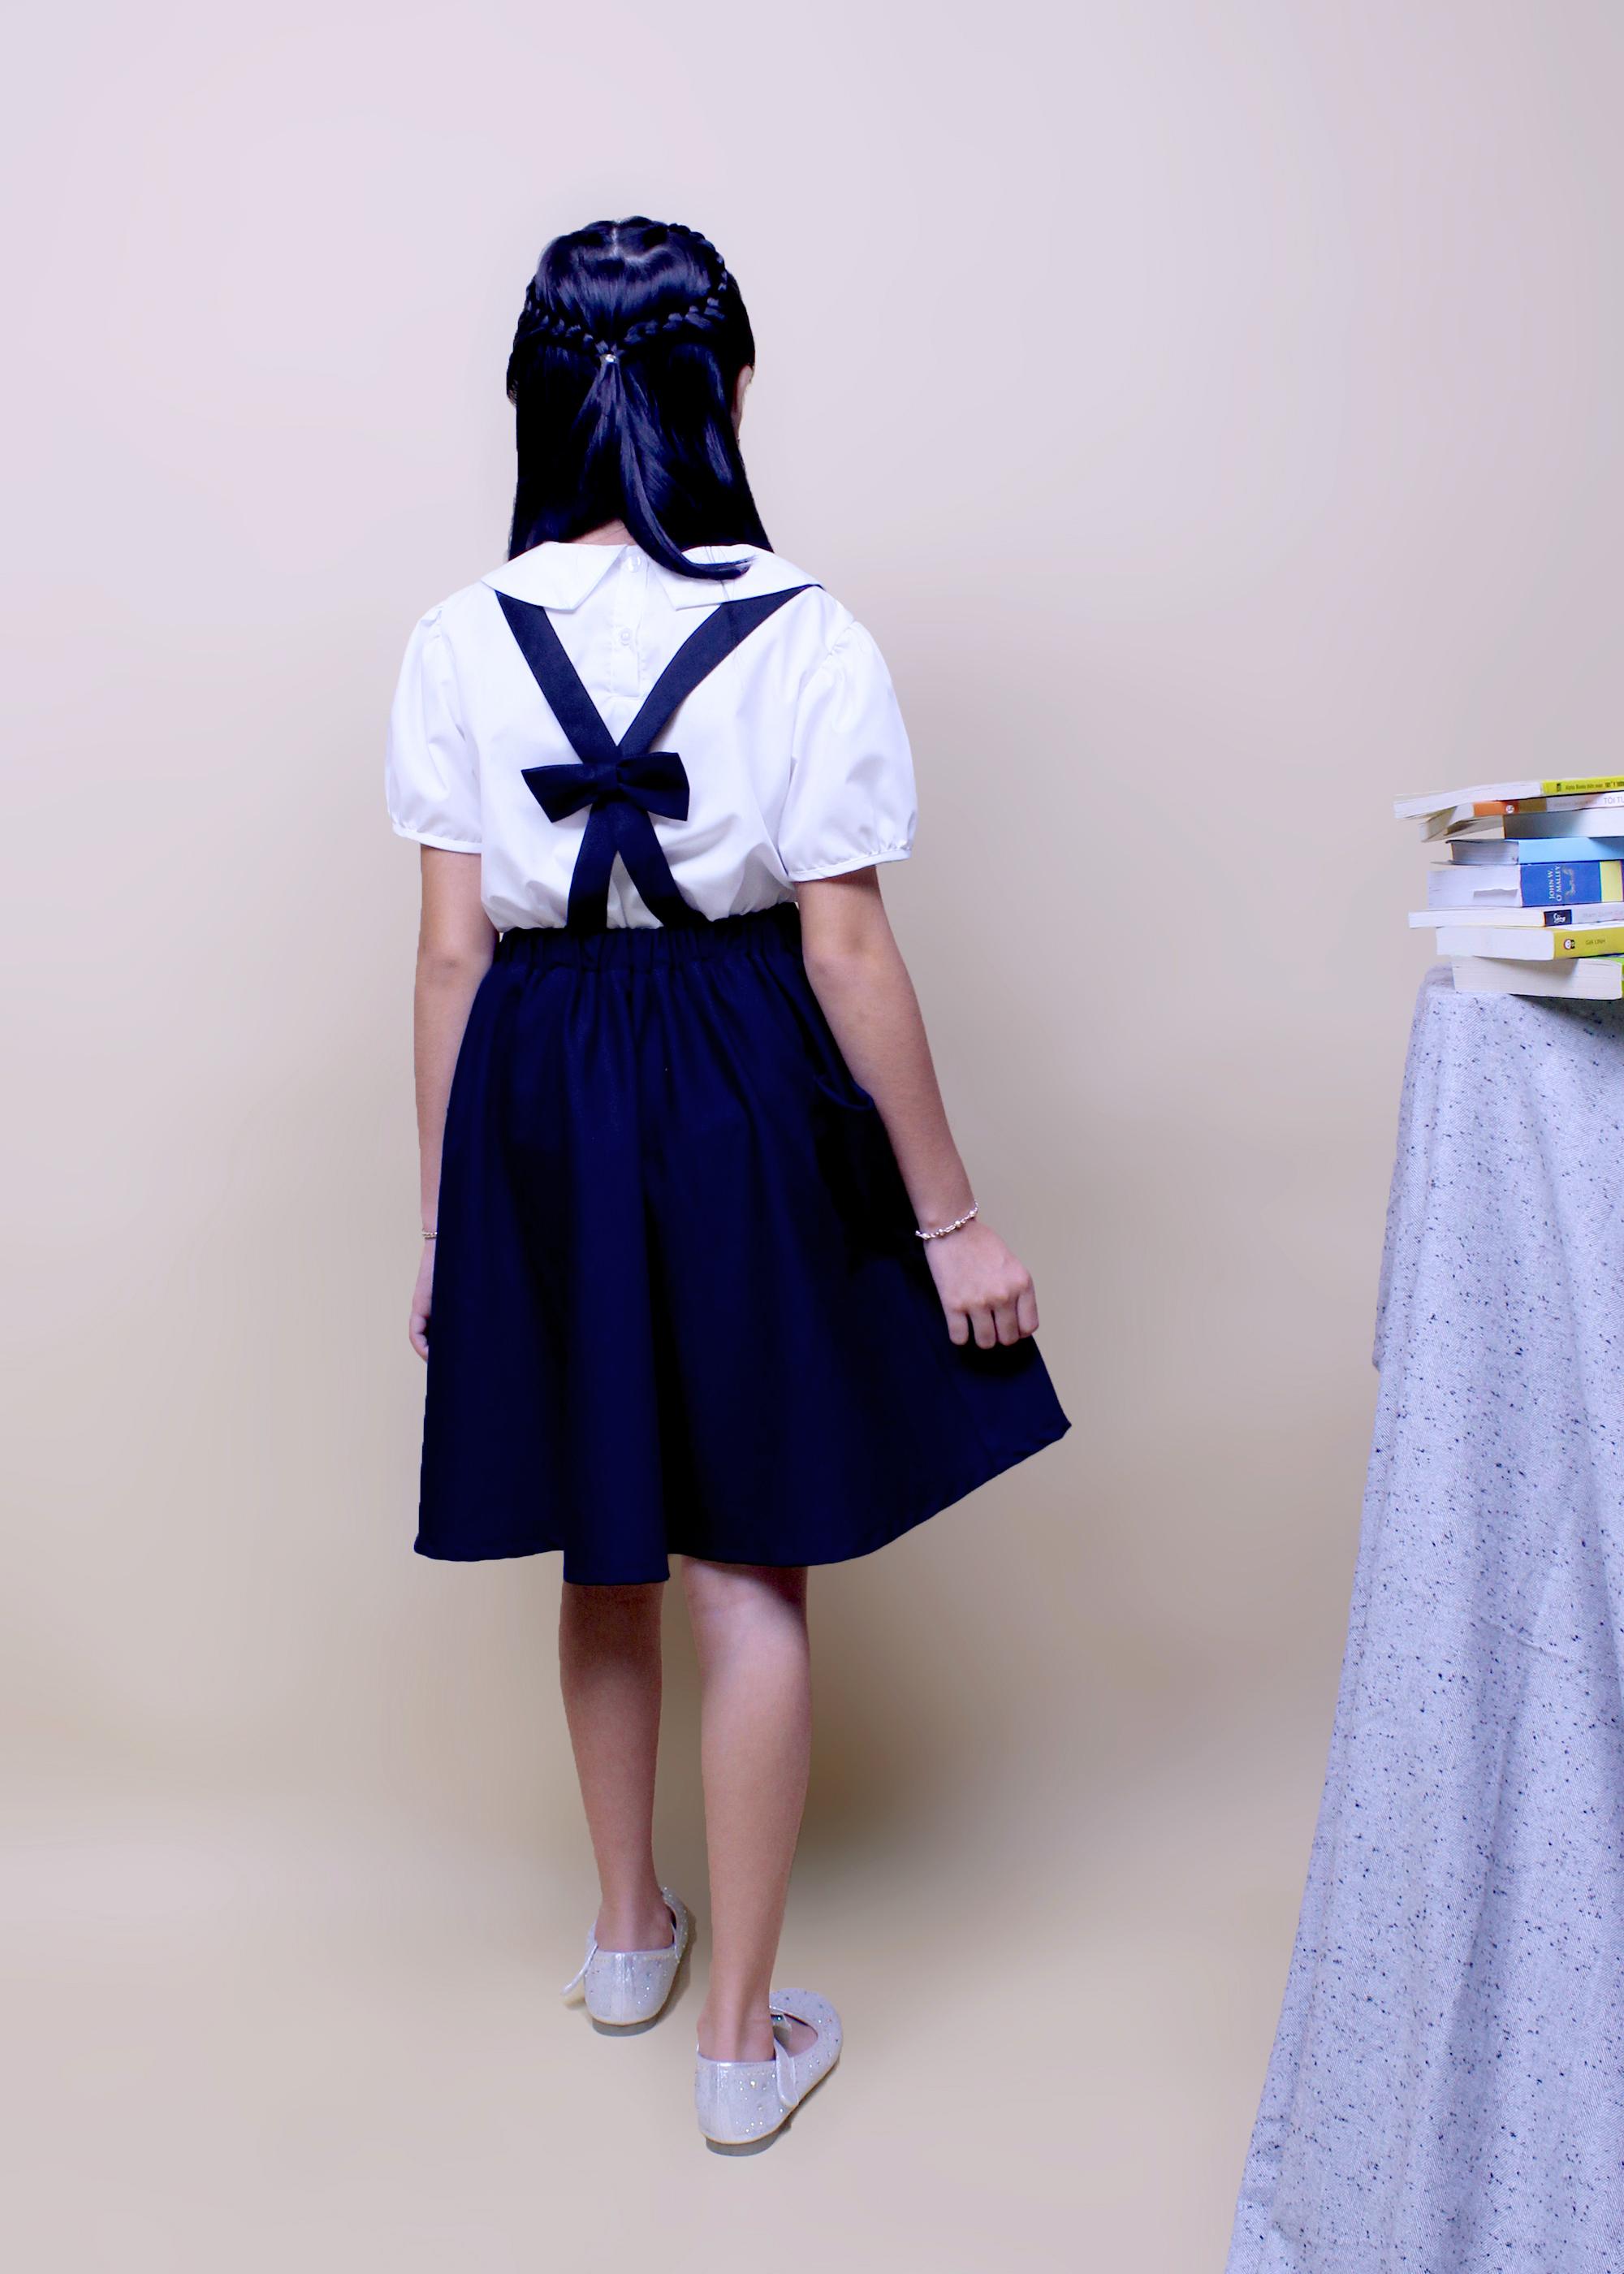 Chân váy yếm cho học sinh có túi cho bé gái đi học, đồng phục học sinh nữ cấp 1 và cấp 2, vải cotton GDP008 JADINY